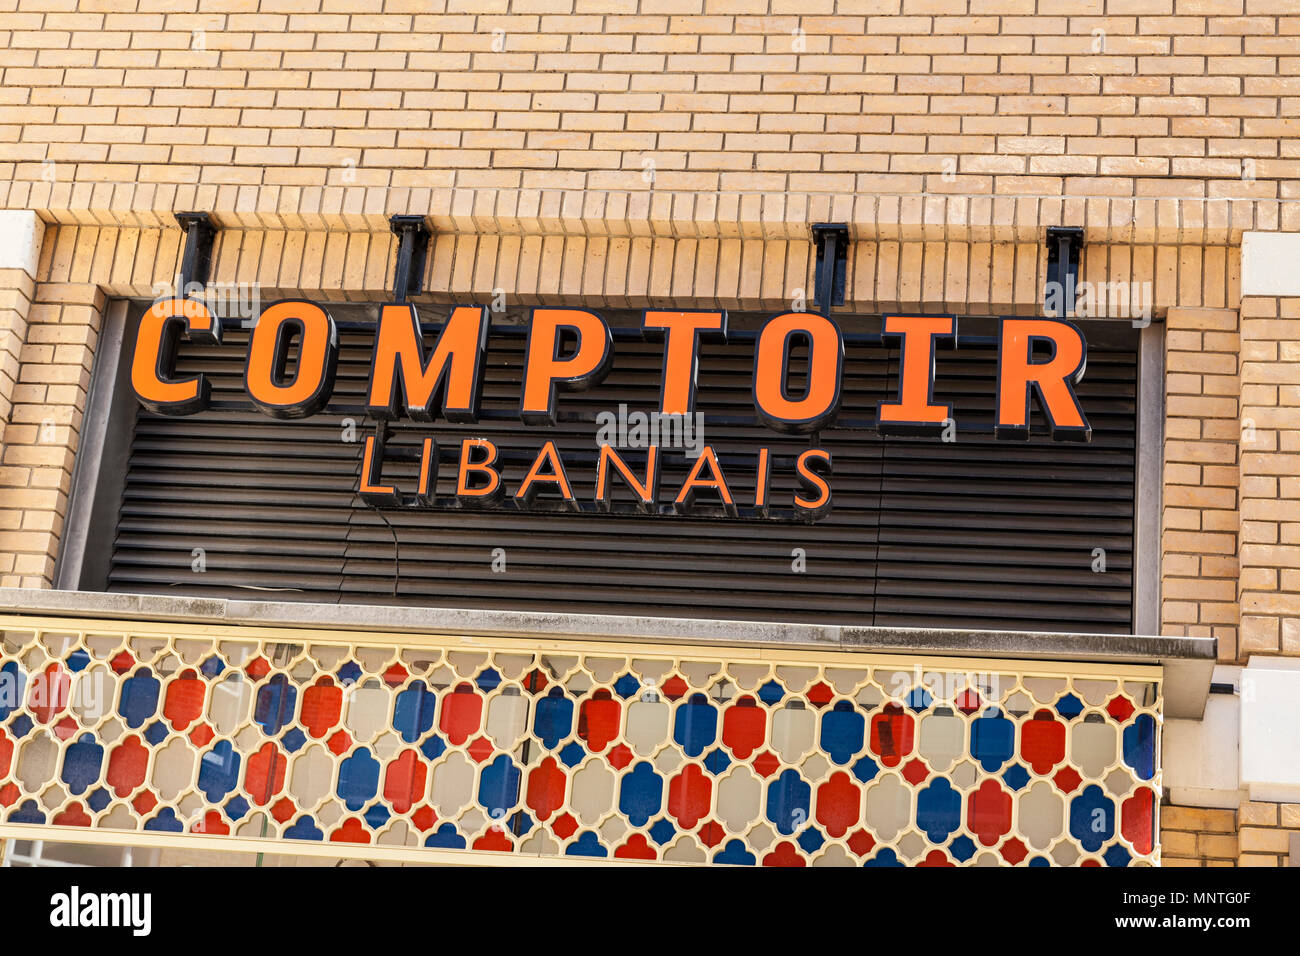 Comptoir Libanais, Lebanese restaurant in Chelsea, London Stock Photo